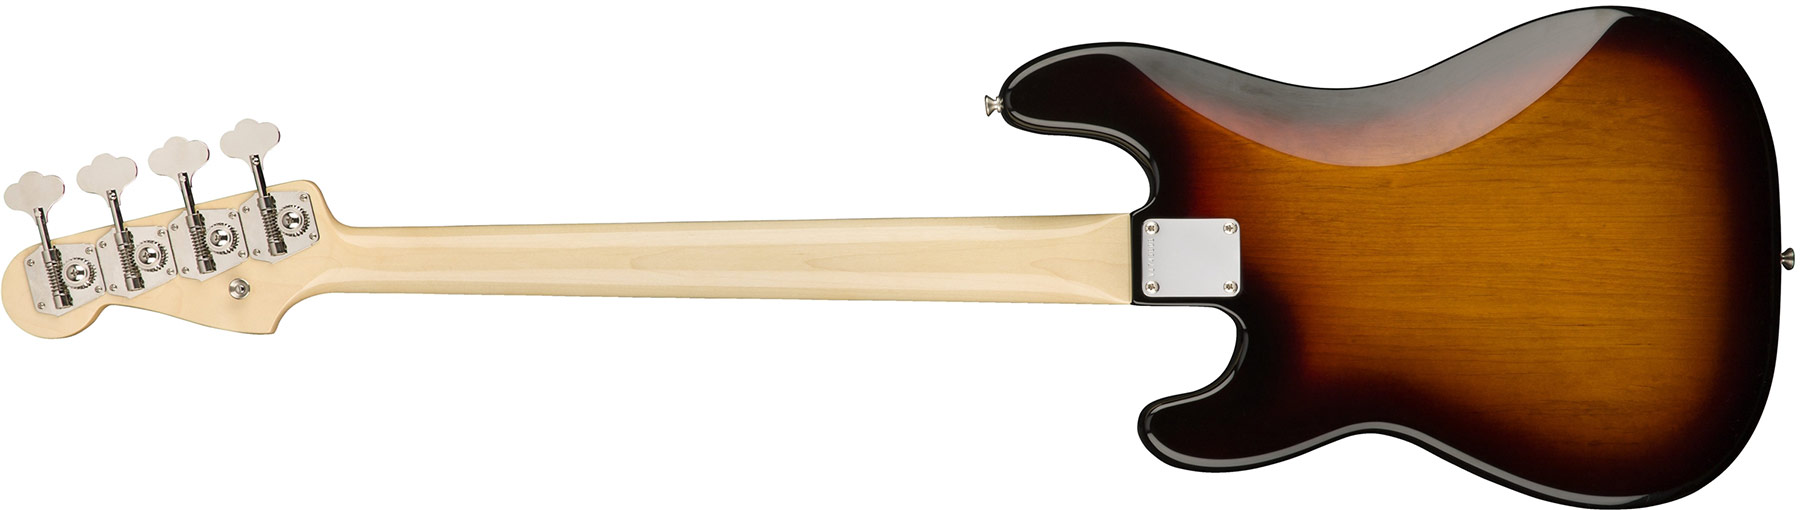 Fender Precision Bass '60s American Original Usa Rw - 3-color Sunburst - Bajo eléctrico de cuerpo sólido - Variation 3